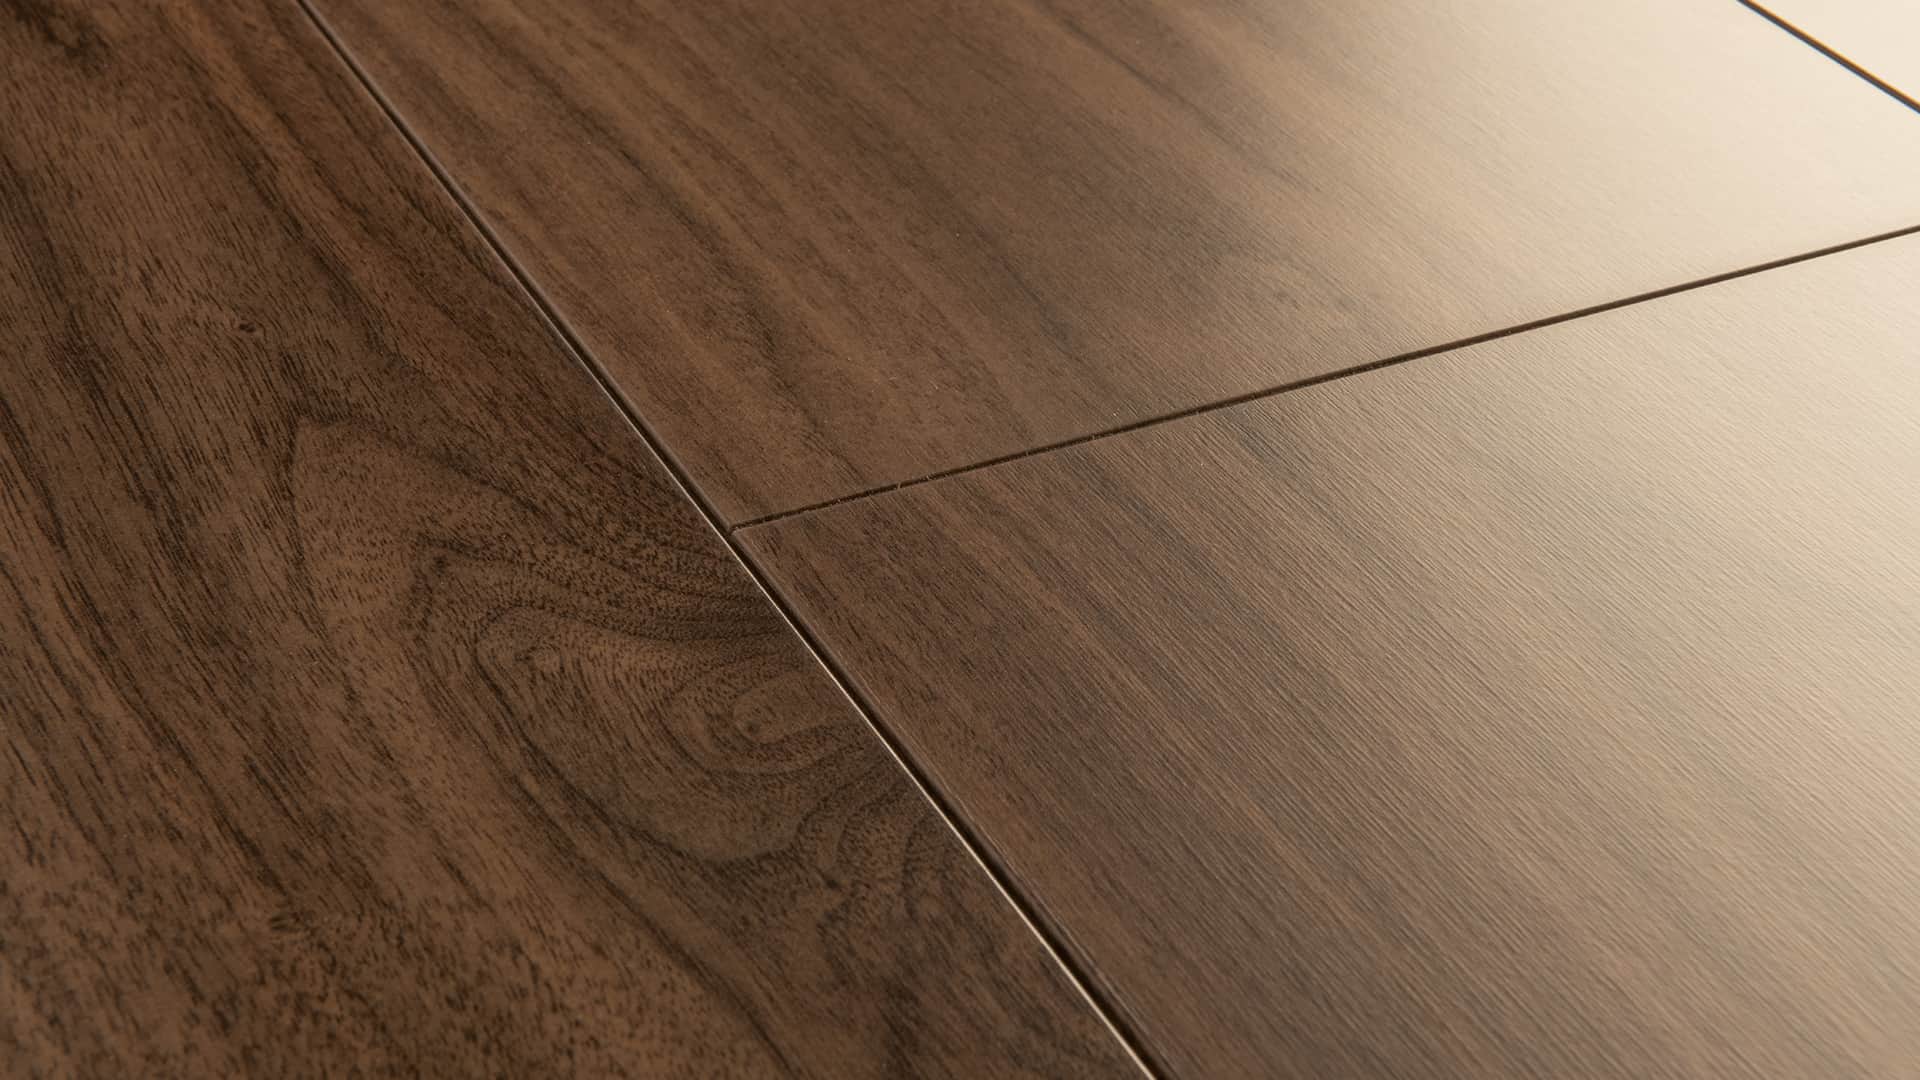 Walnut laminate flooring